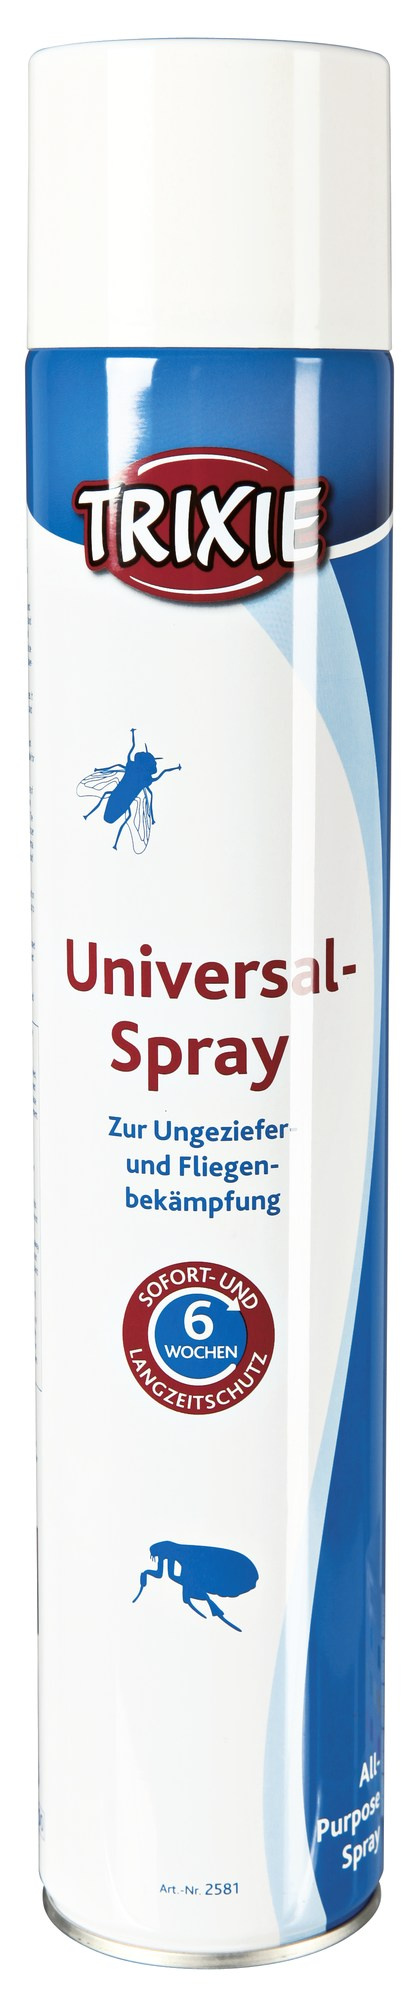 Spray Insecticid pentru Mediul Inconjurator 750 ml 2581 petmart.ro